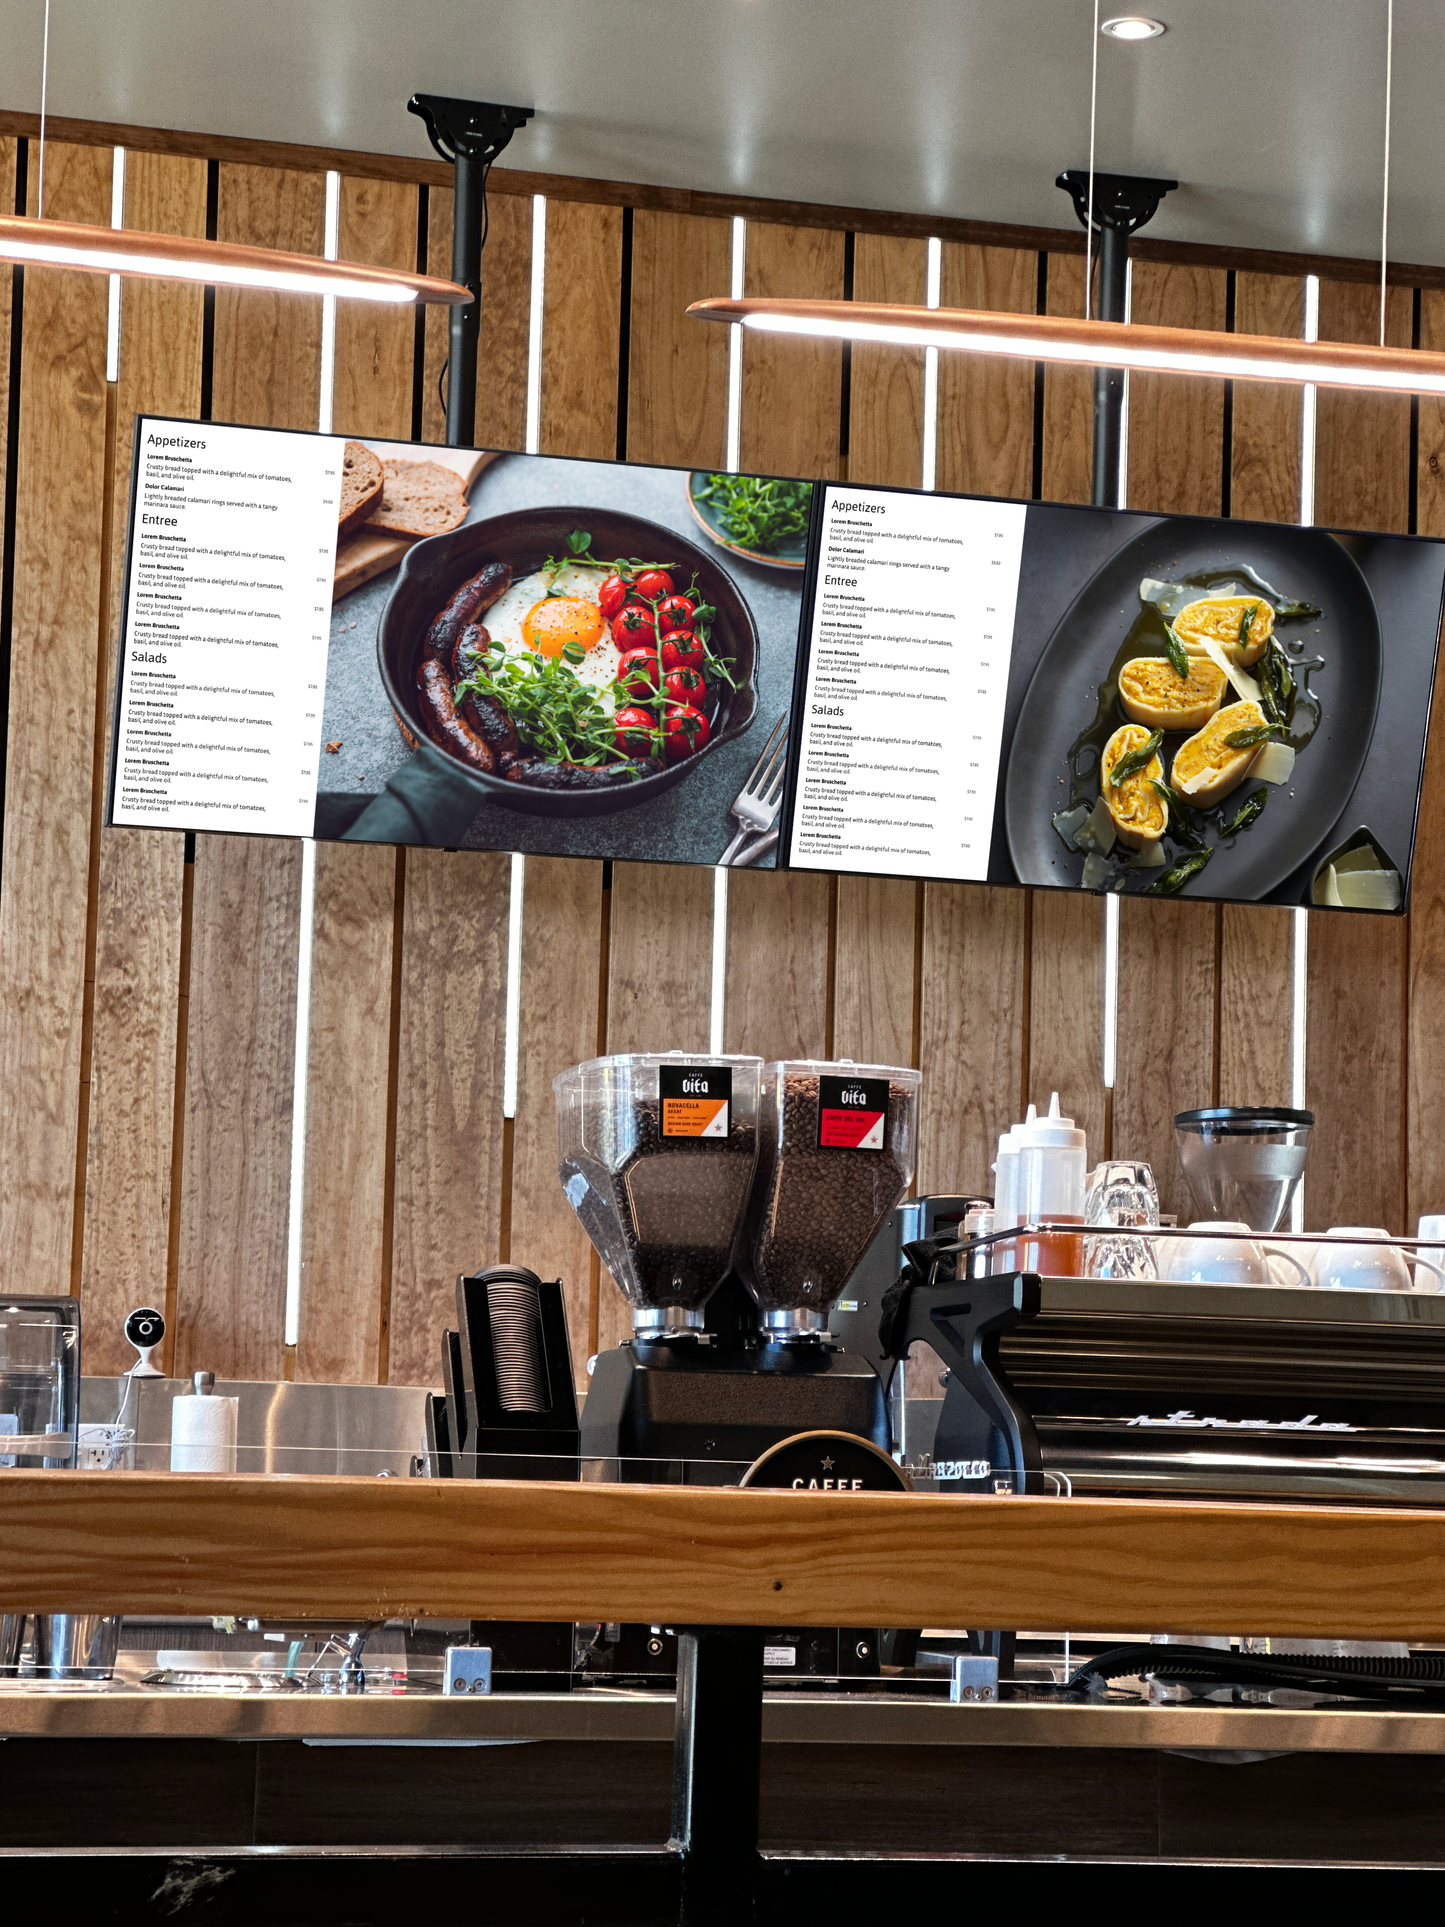 Digital Signage Menu Template for Restaurants